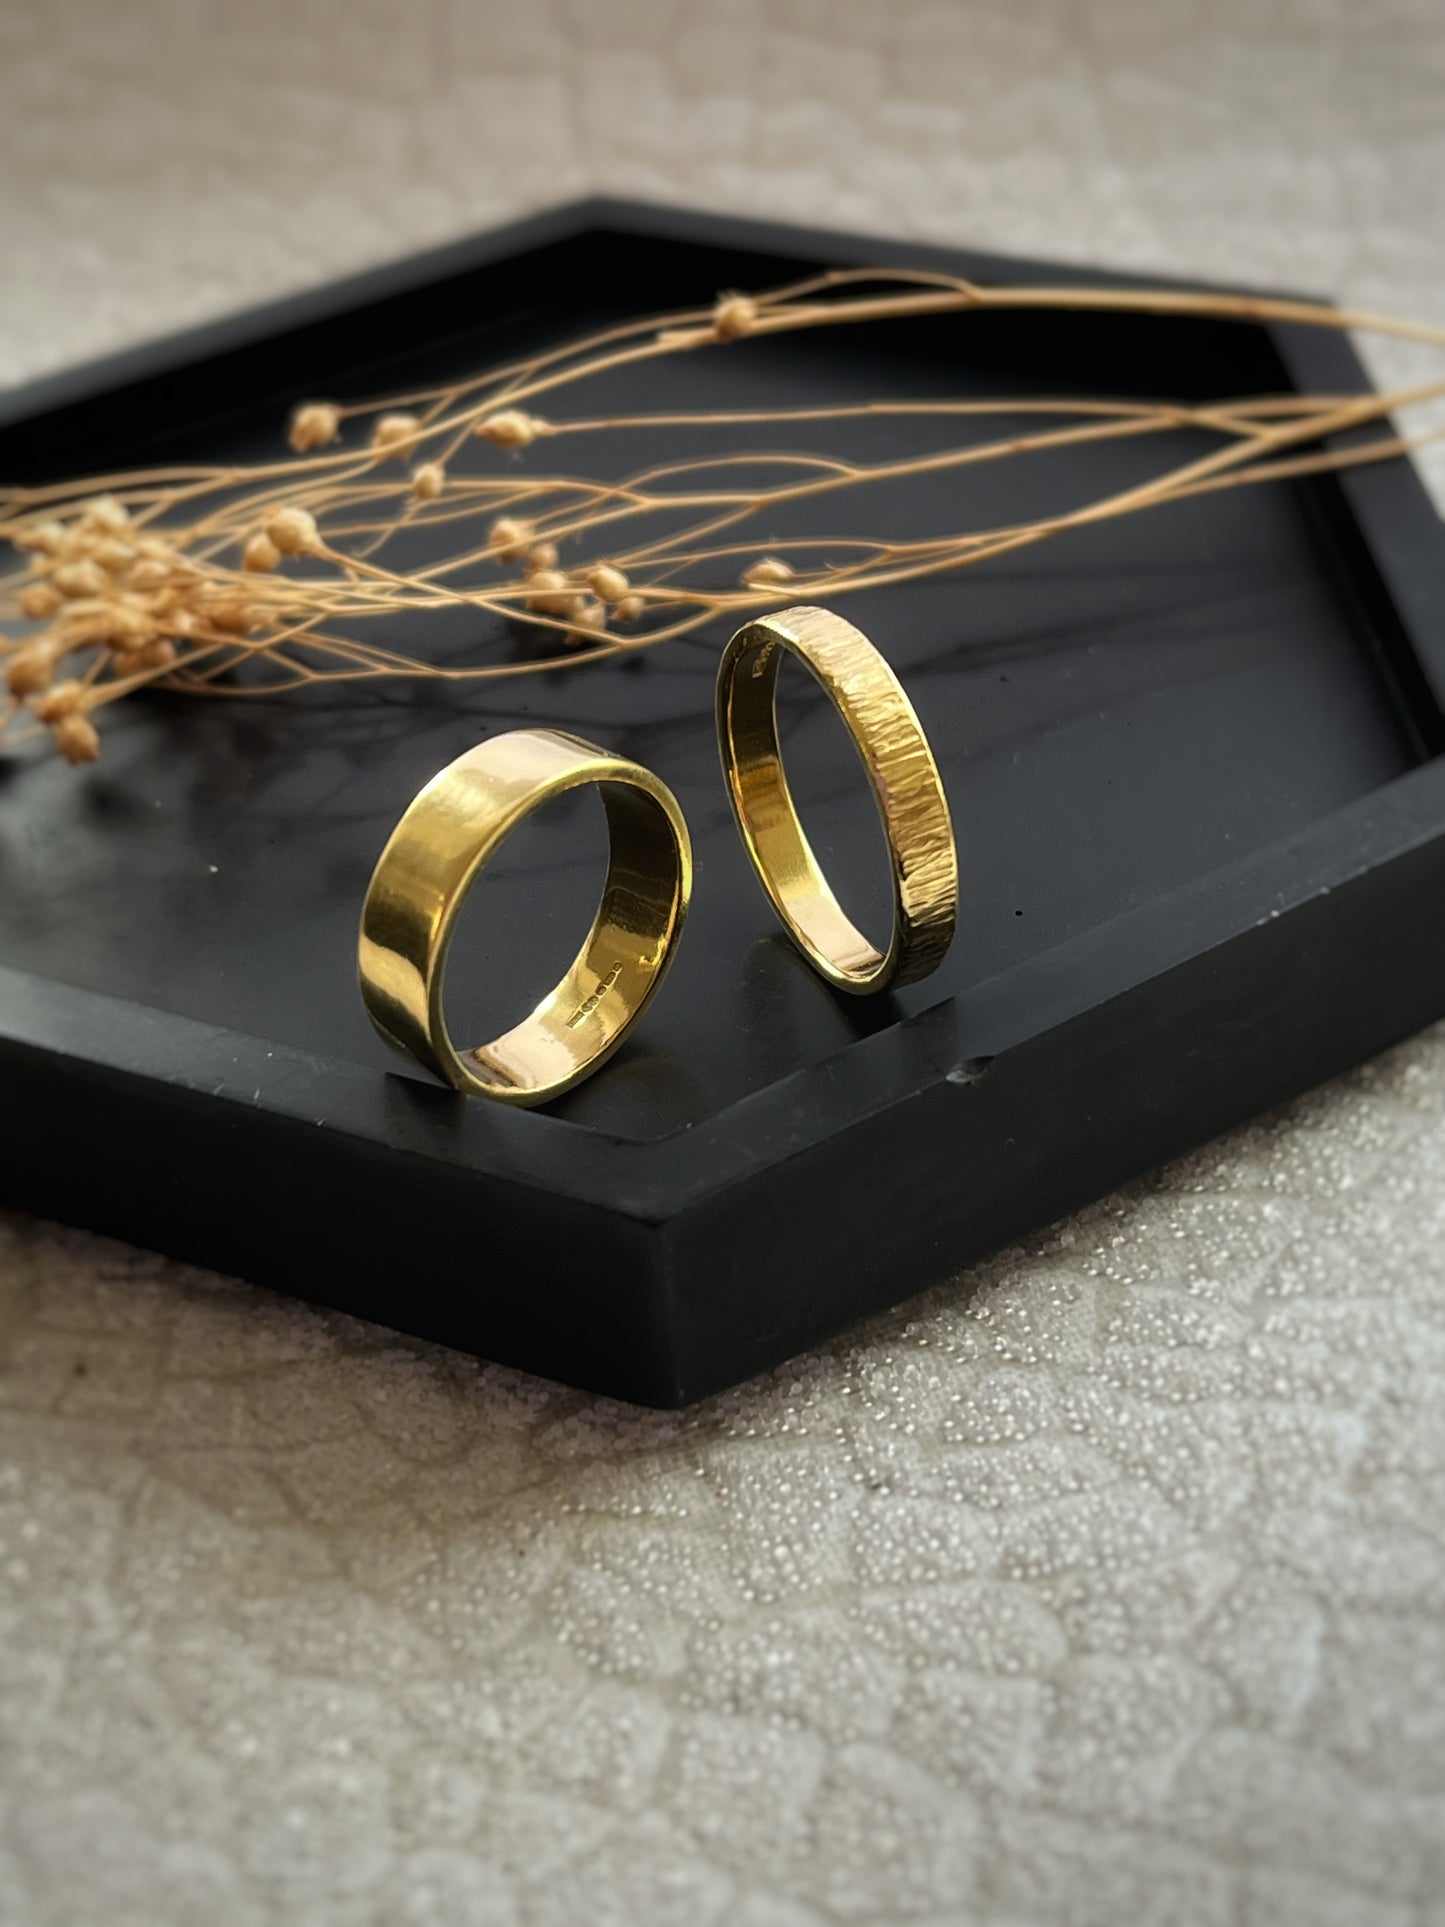 Handmade gold rings